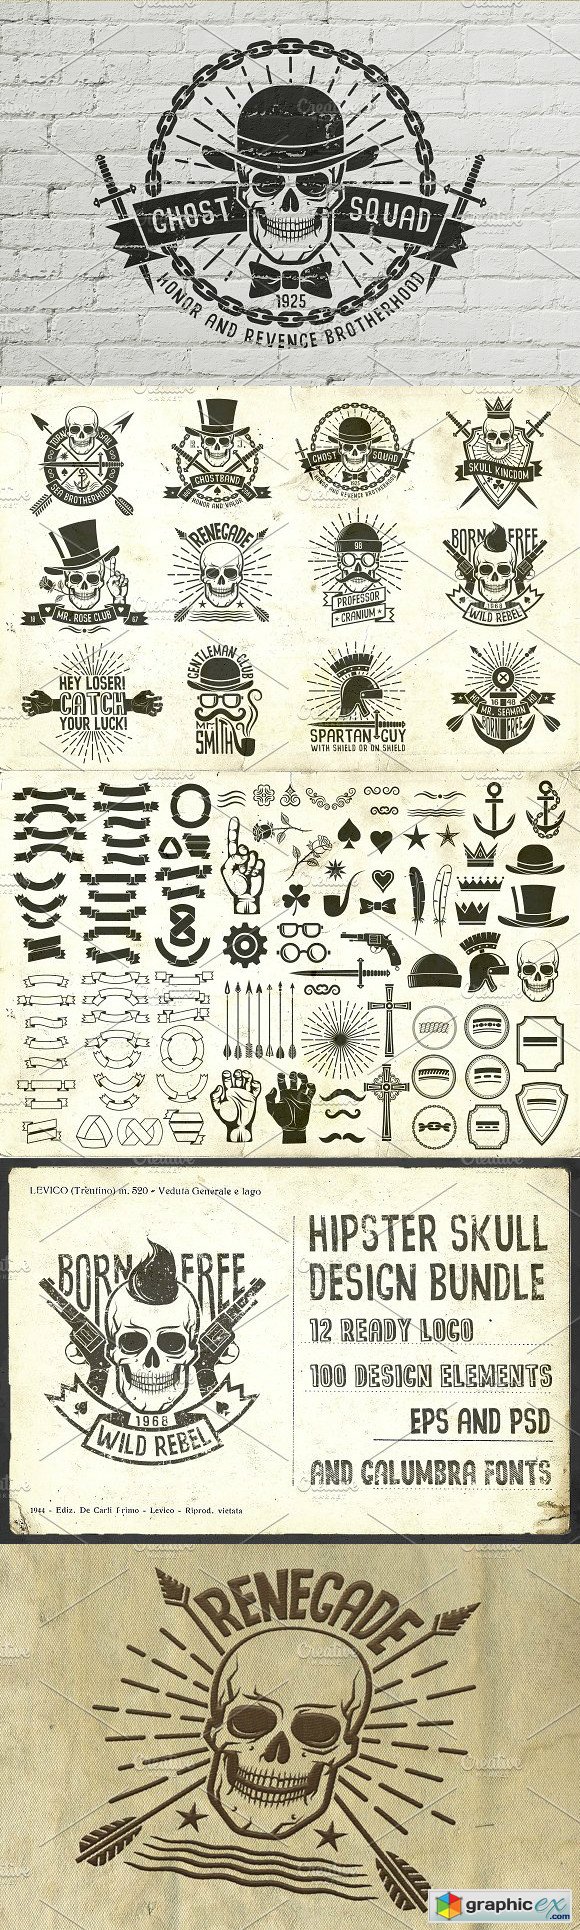 Hipster Skull Design Bundle